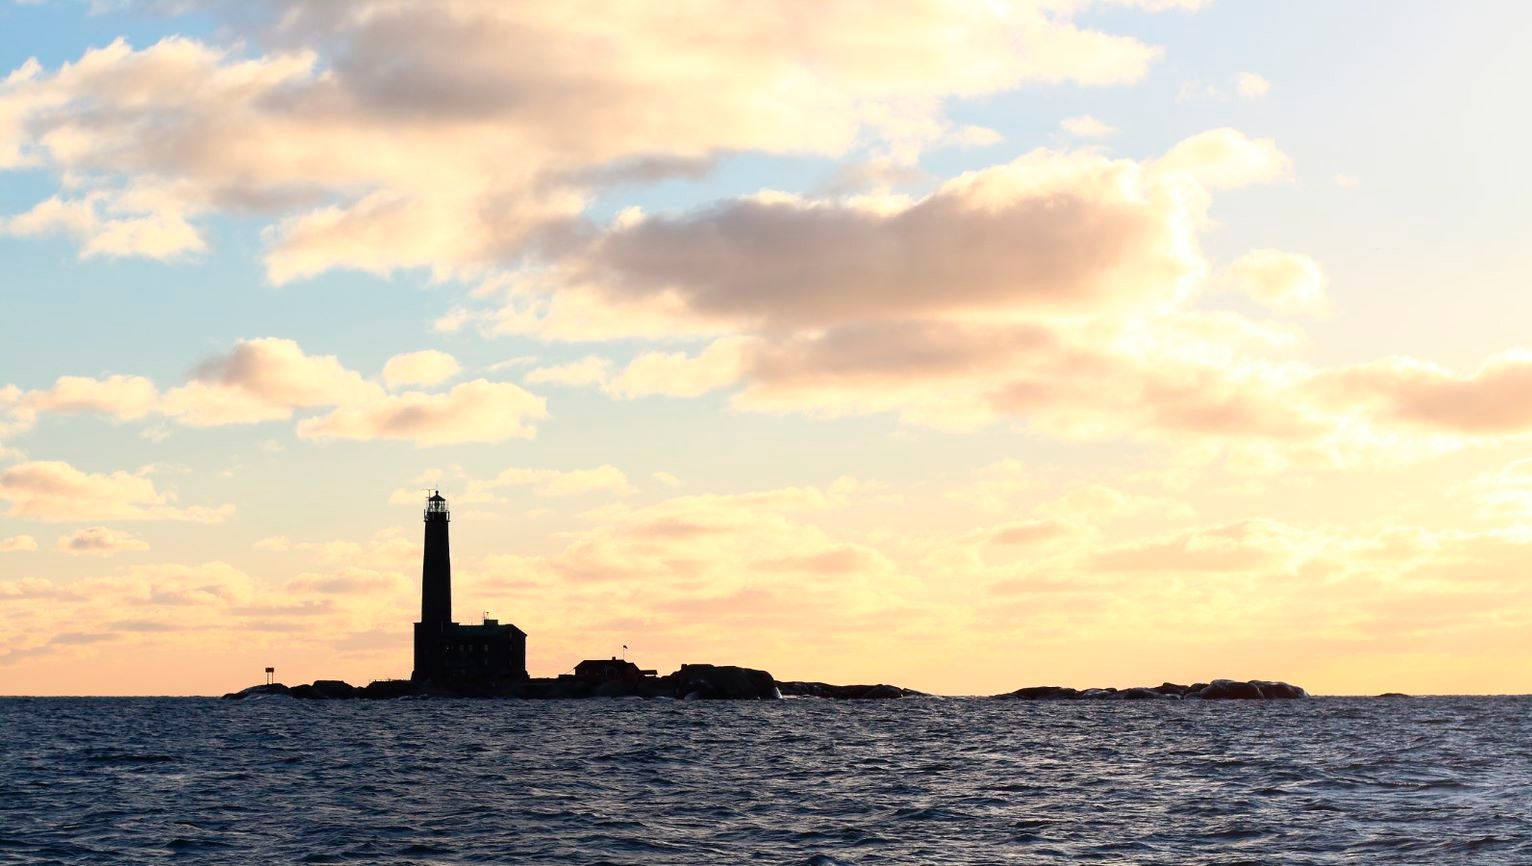 The shadow outline of Bengtskär Lighthouse against a setting sun.